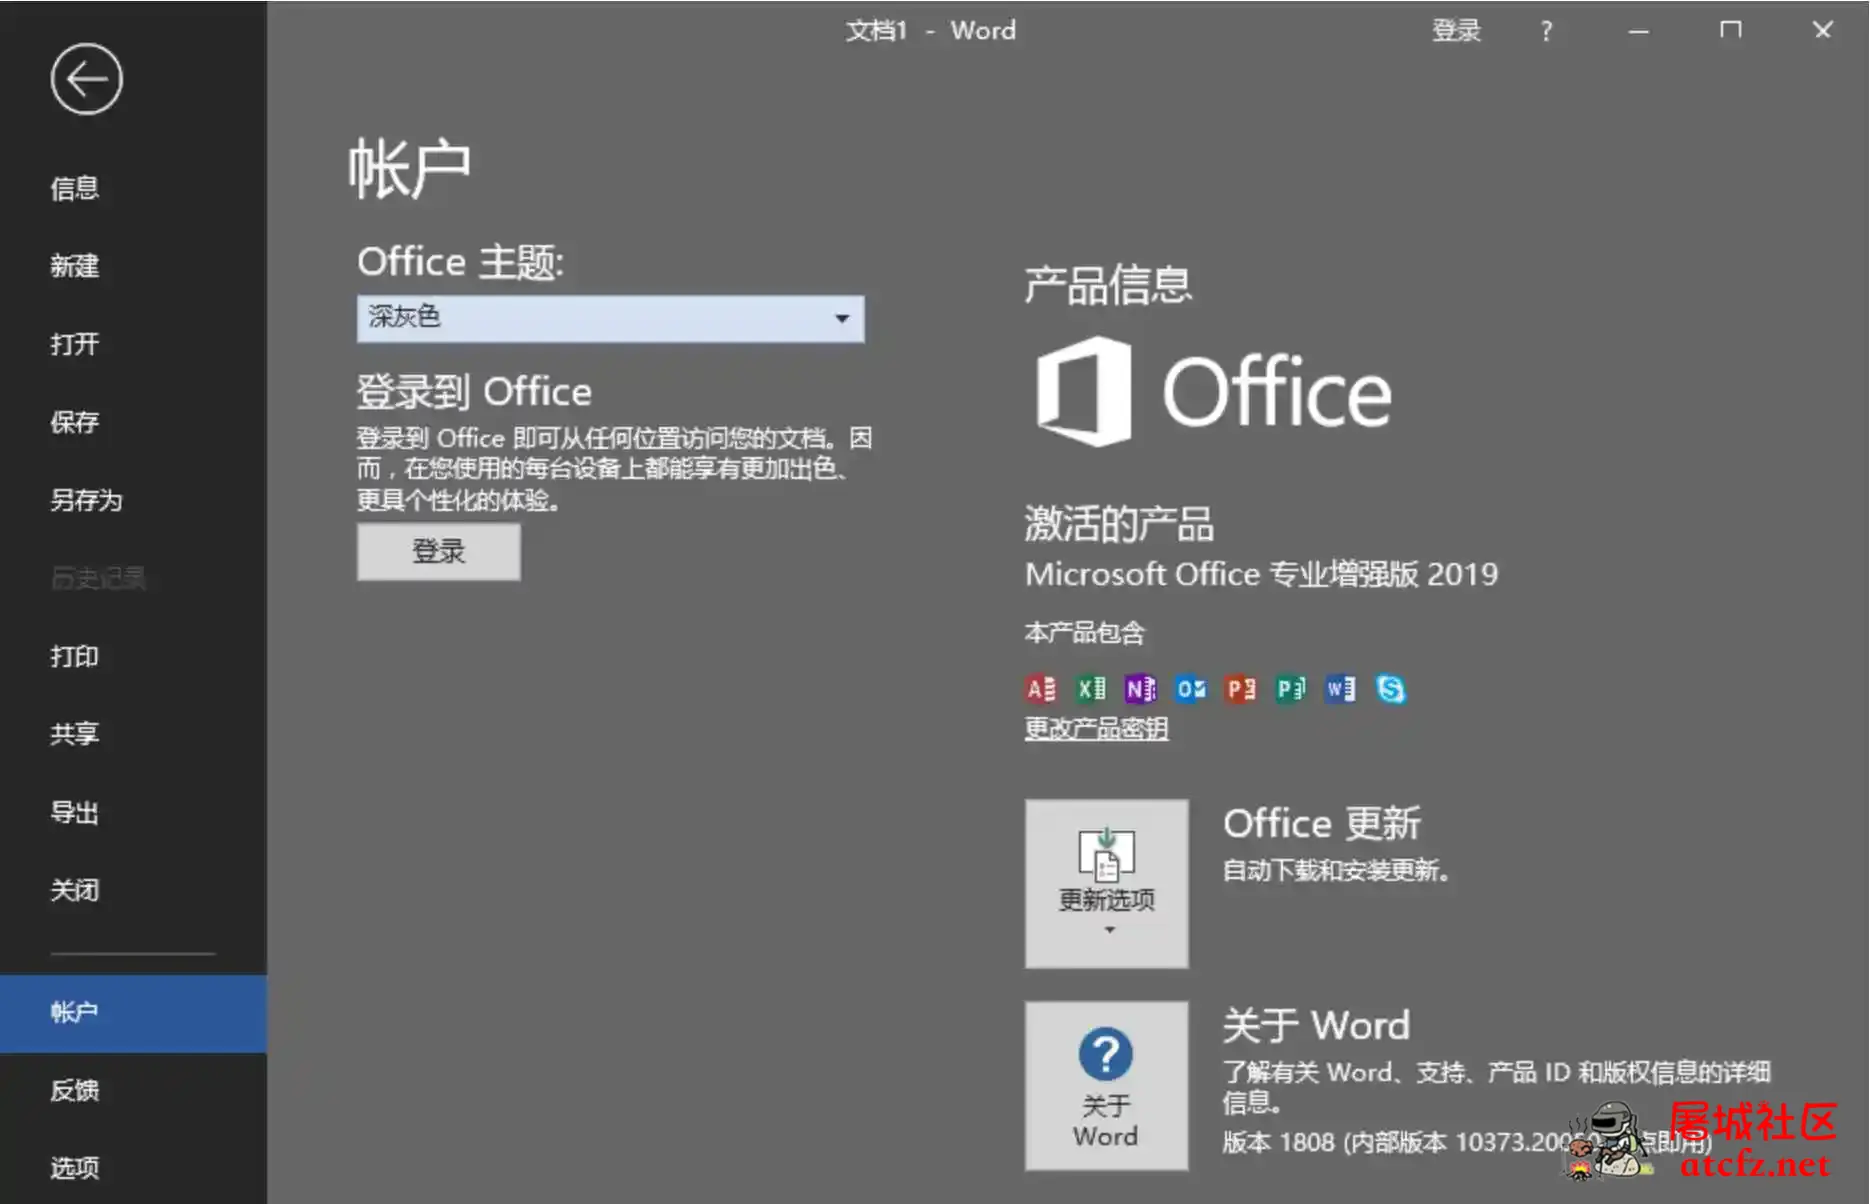 微软Office2019批量授权版批量授权商业版工具 屠城辅助网www.tcfz1.com7982